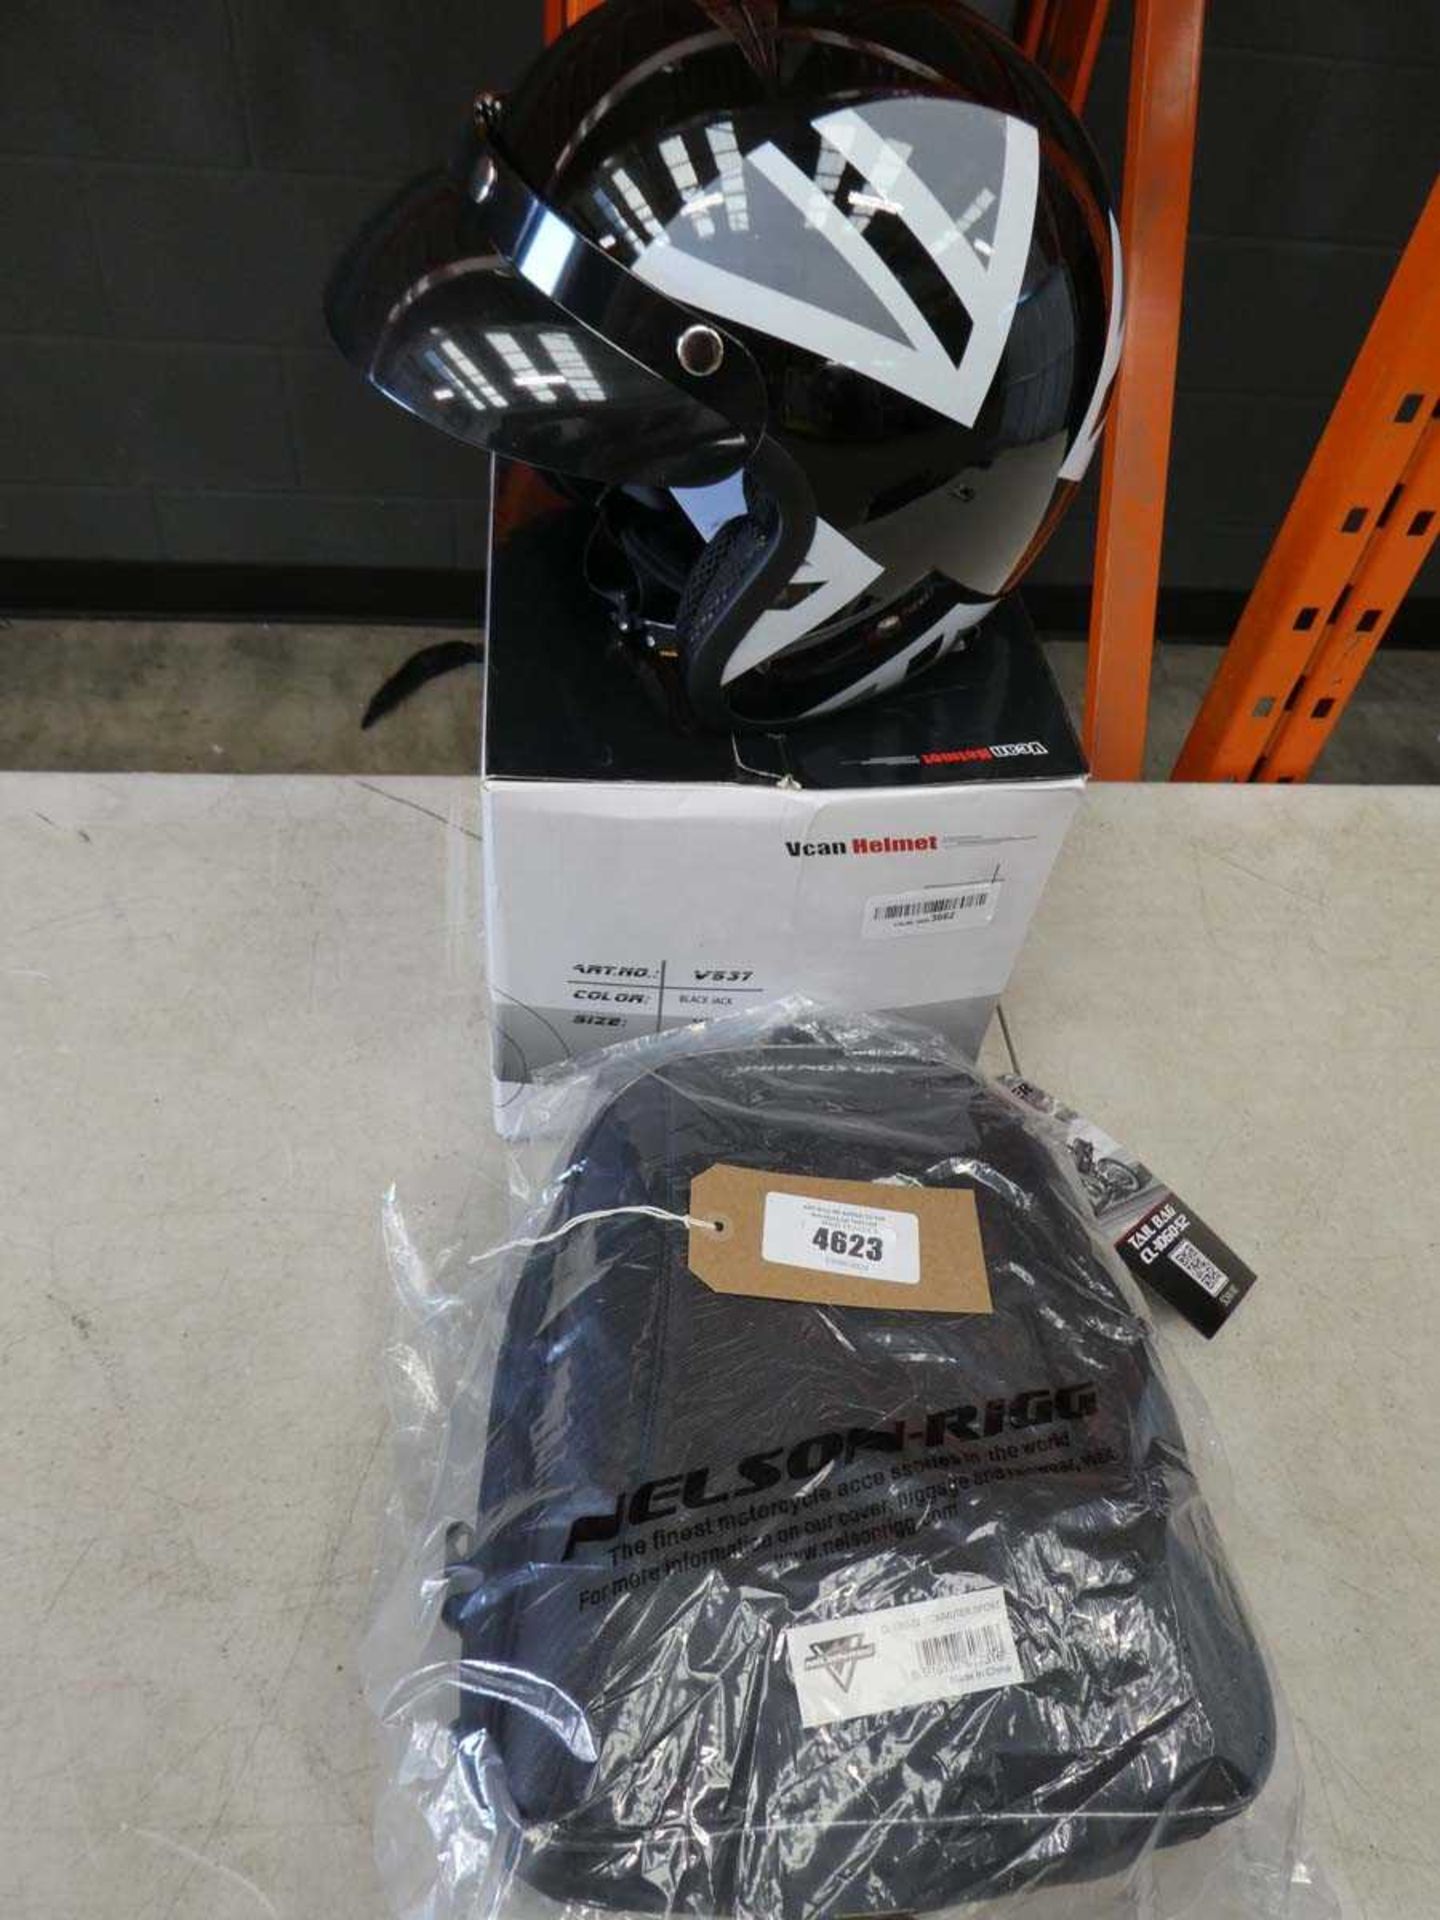 +VAT Motorcycle helmet and motorcycle bag